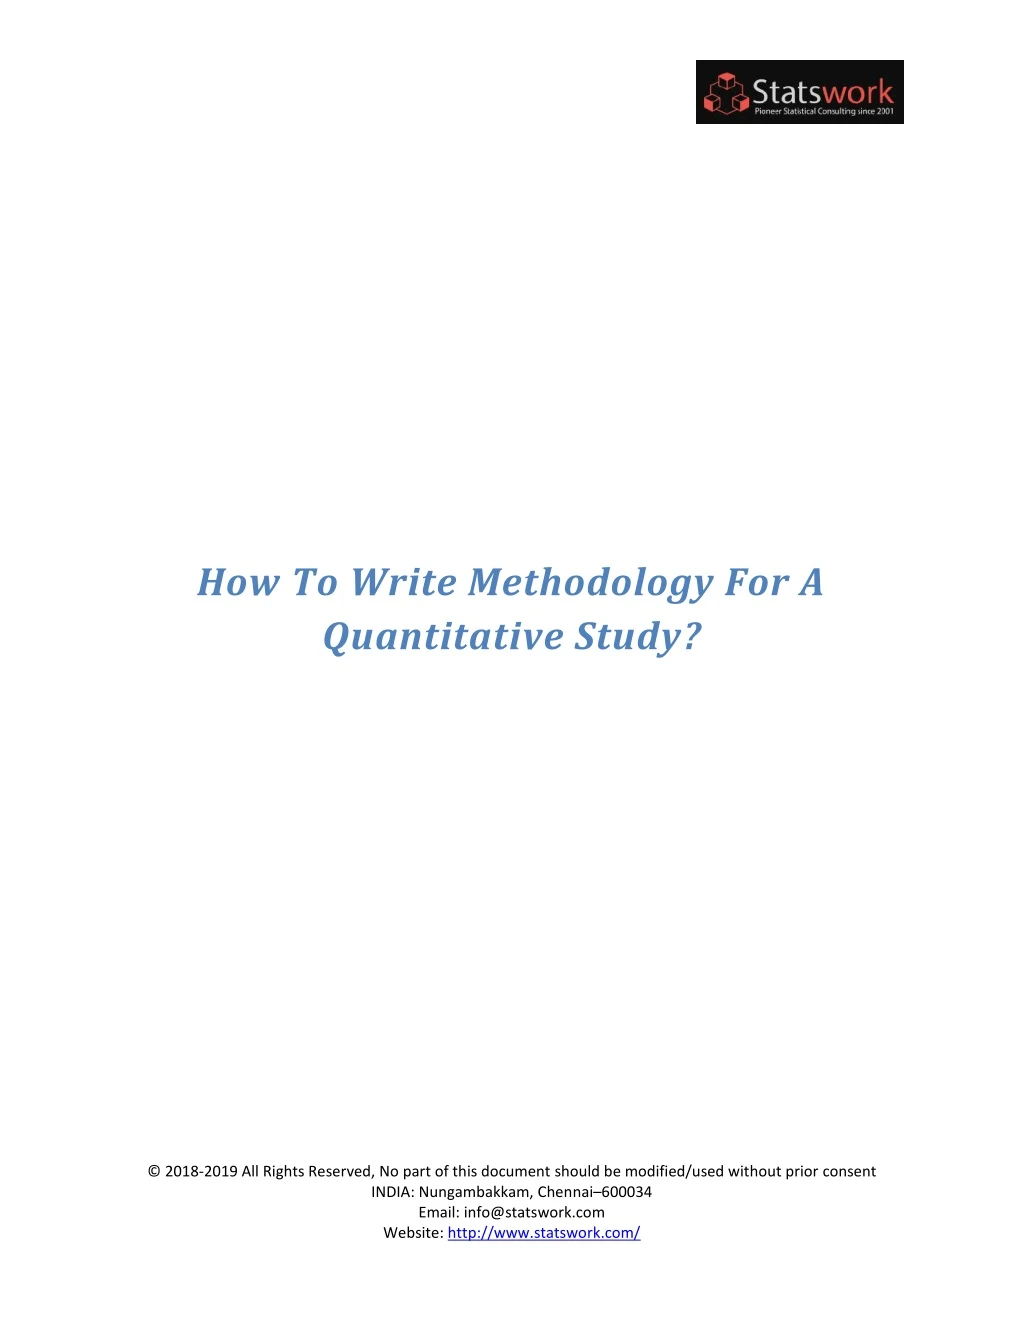 how to write methodology for a quantitative study